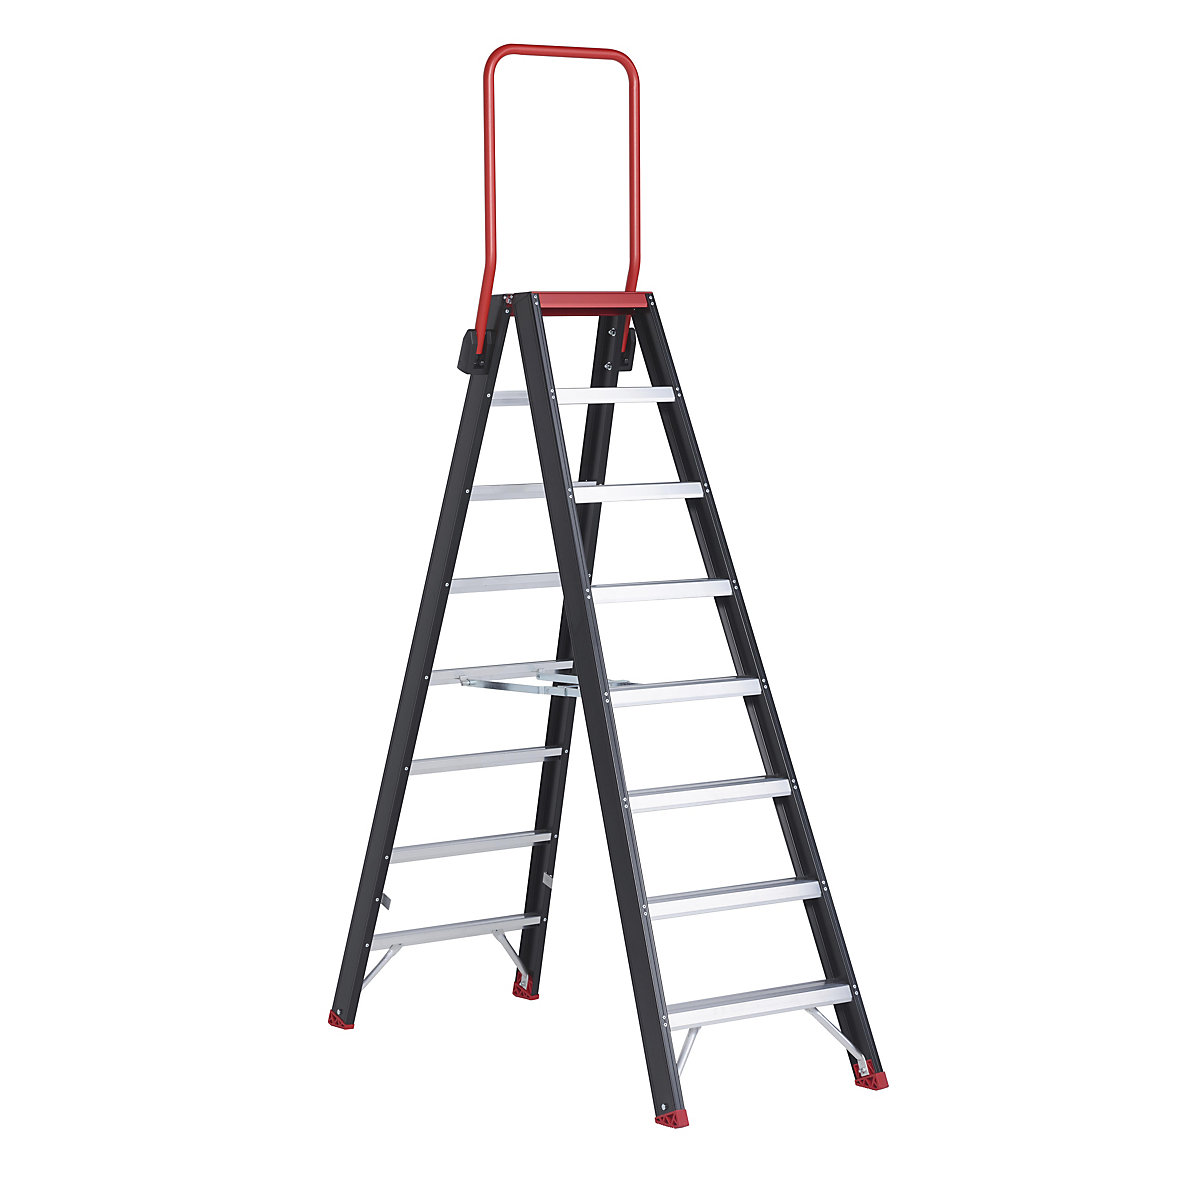 Escalera tipo tijera de seguridad – Altrex, ascenso por ambos lados, 2 x 8 peldaños-14